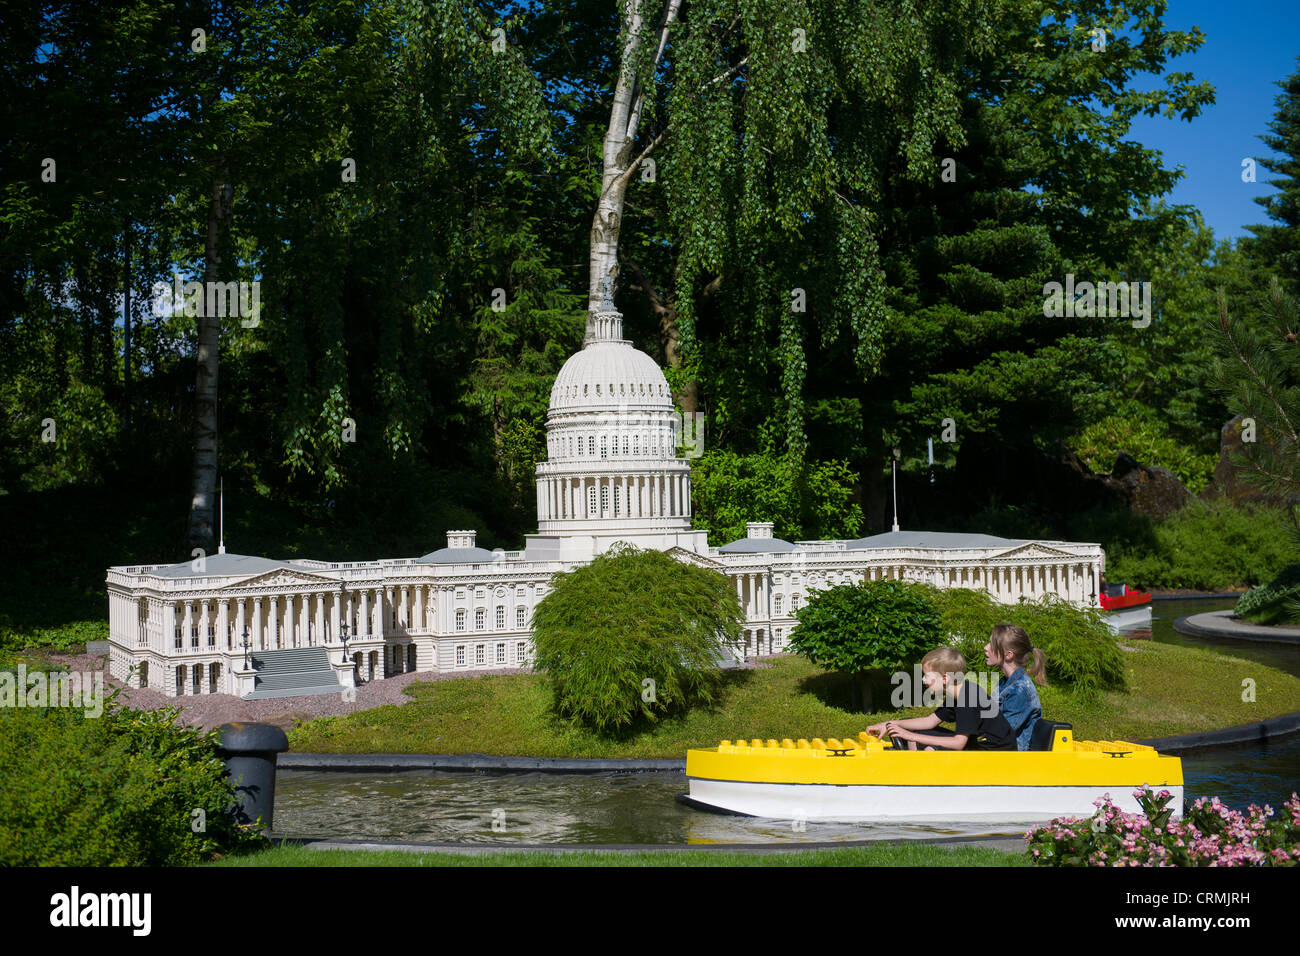 Bambini su Miniboat passando modello di Lego della United States Capitol Building, Legoland a Billund, Danimarca Foto Stock